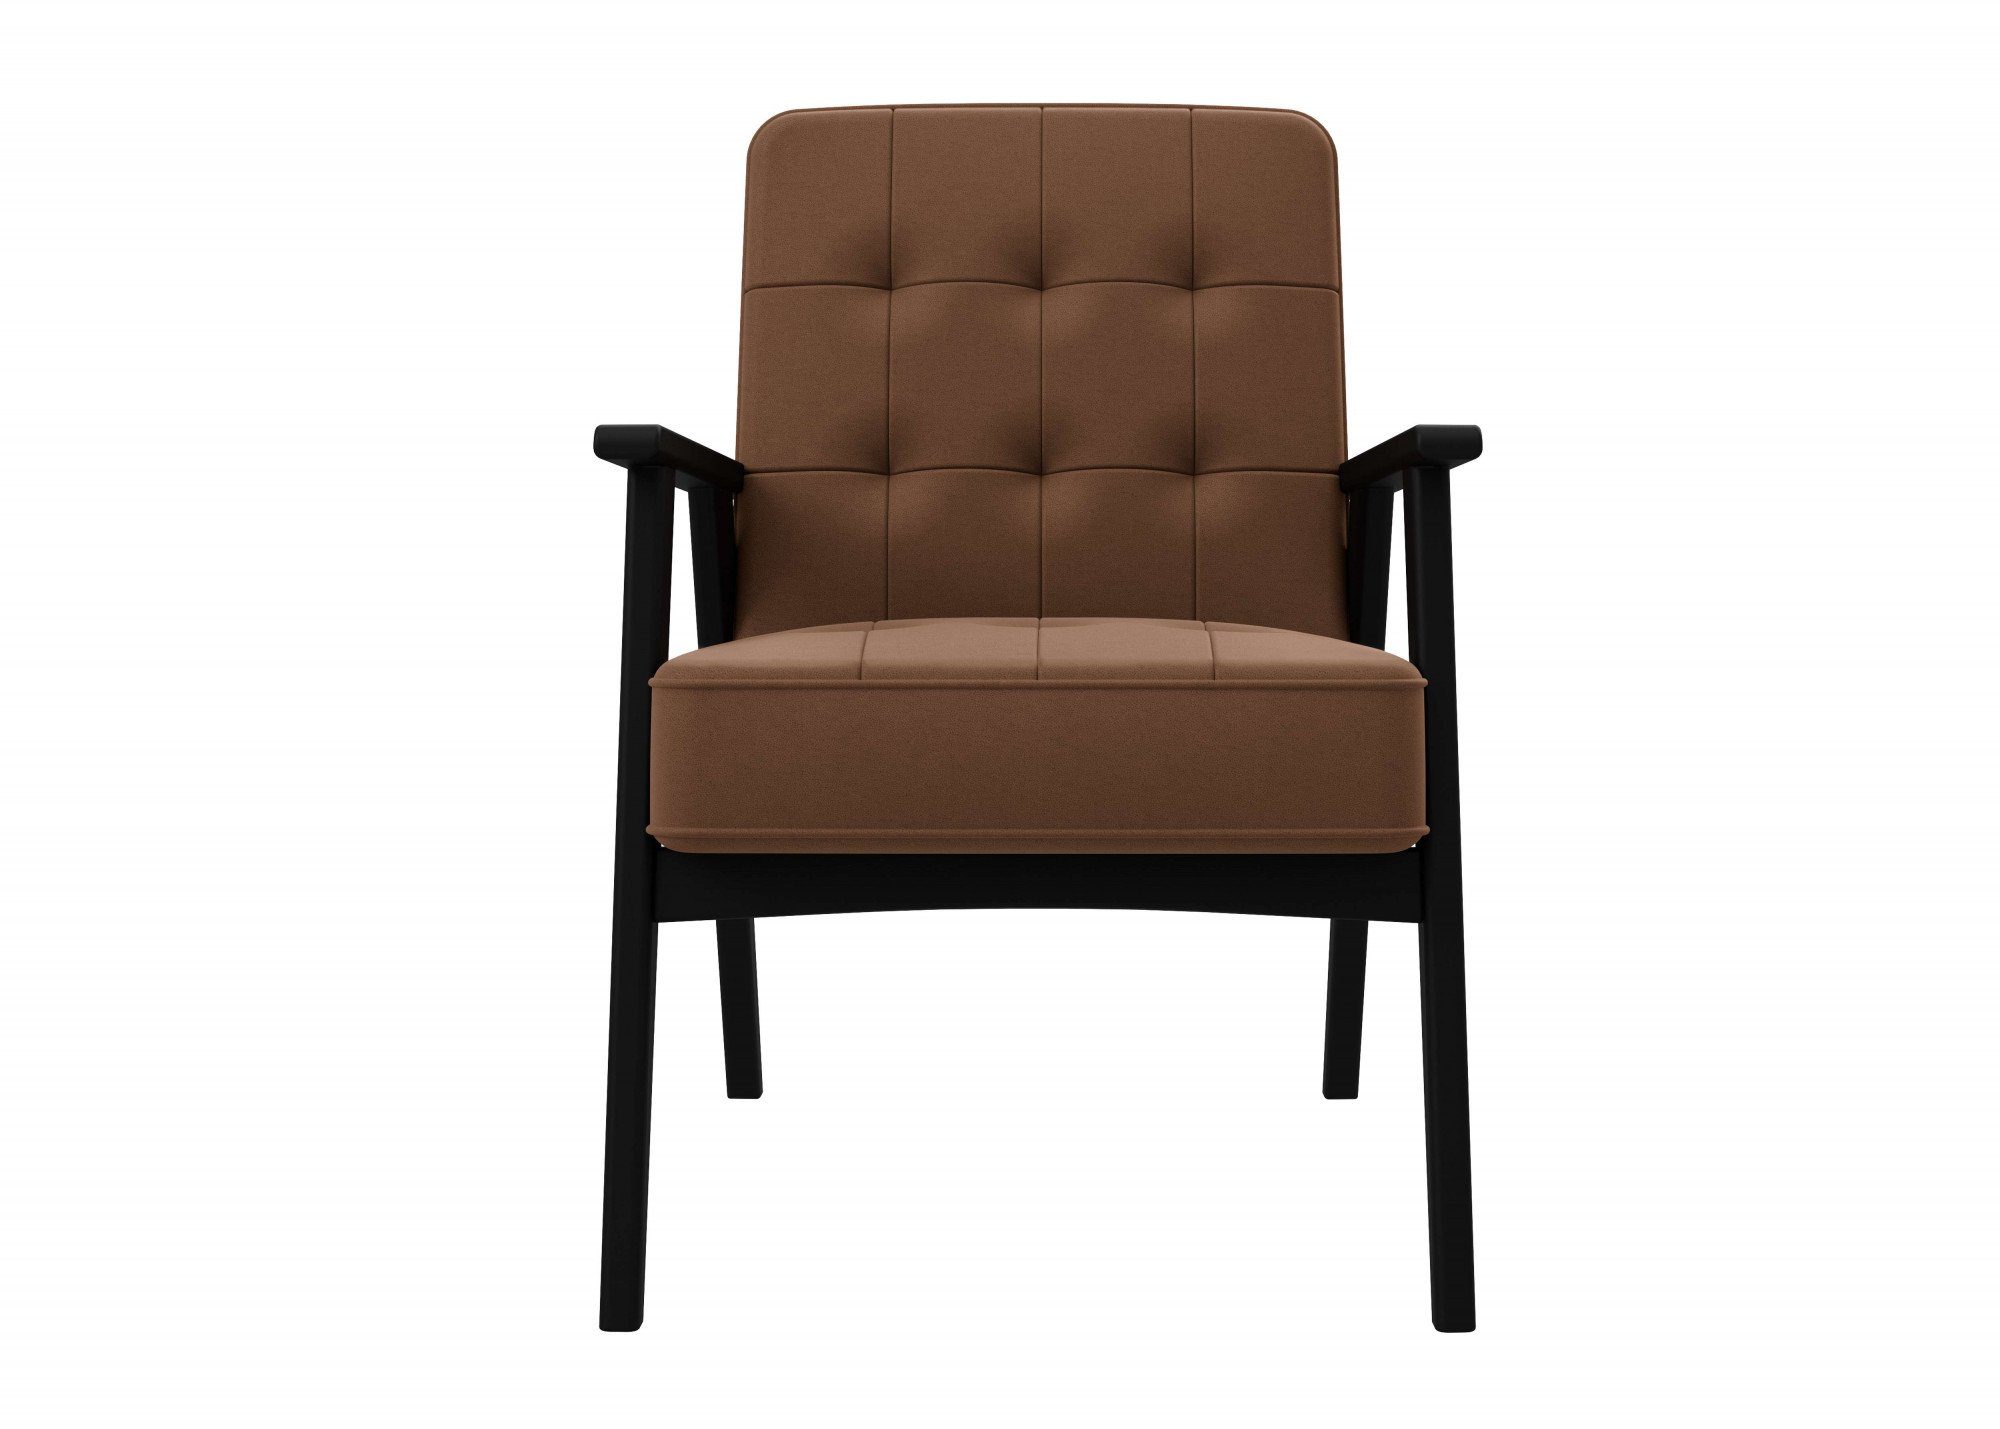 andas aus Picante mit Lederoptik, in Massivholz, Alvared, edles Design Sessel Sitzkomfort hohen Wellenunterfederung für